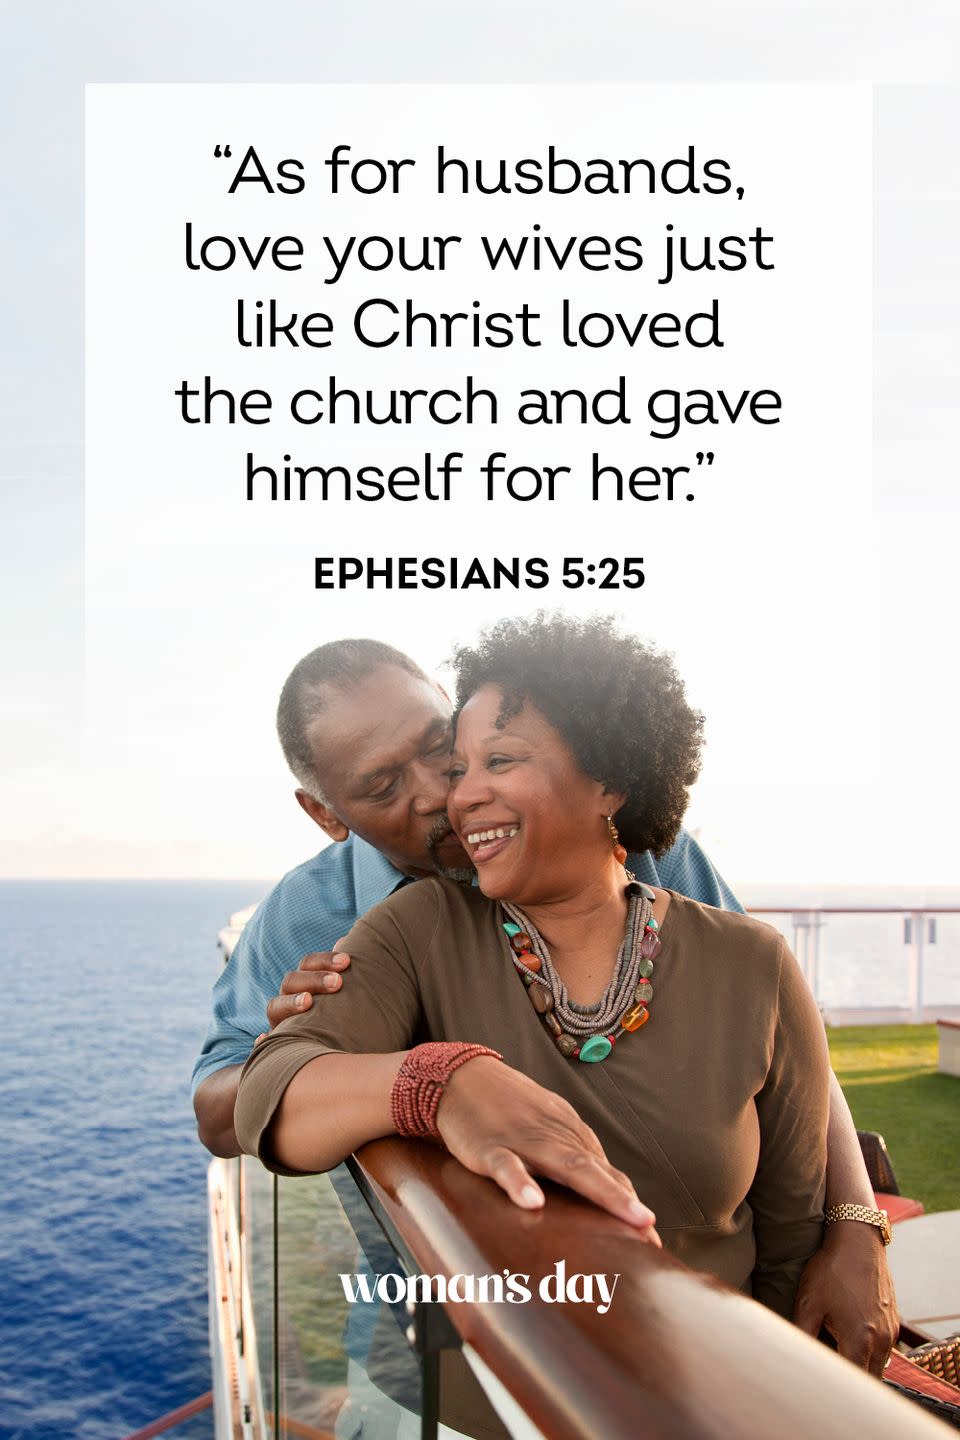 1) Ephesians 5:25